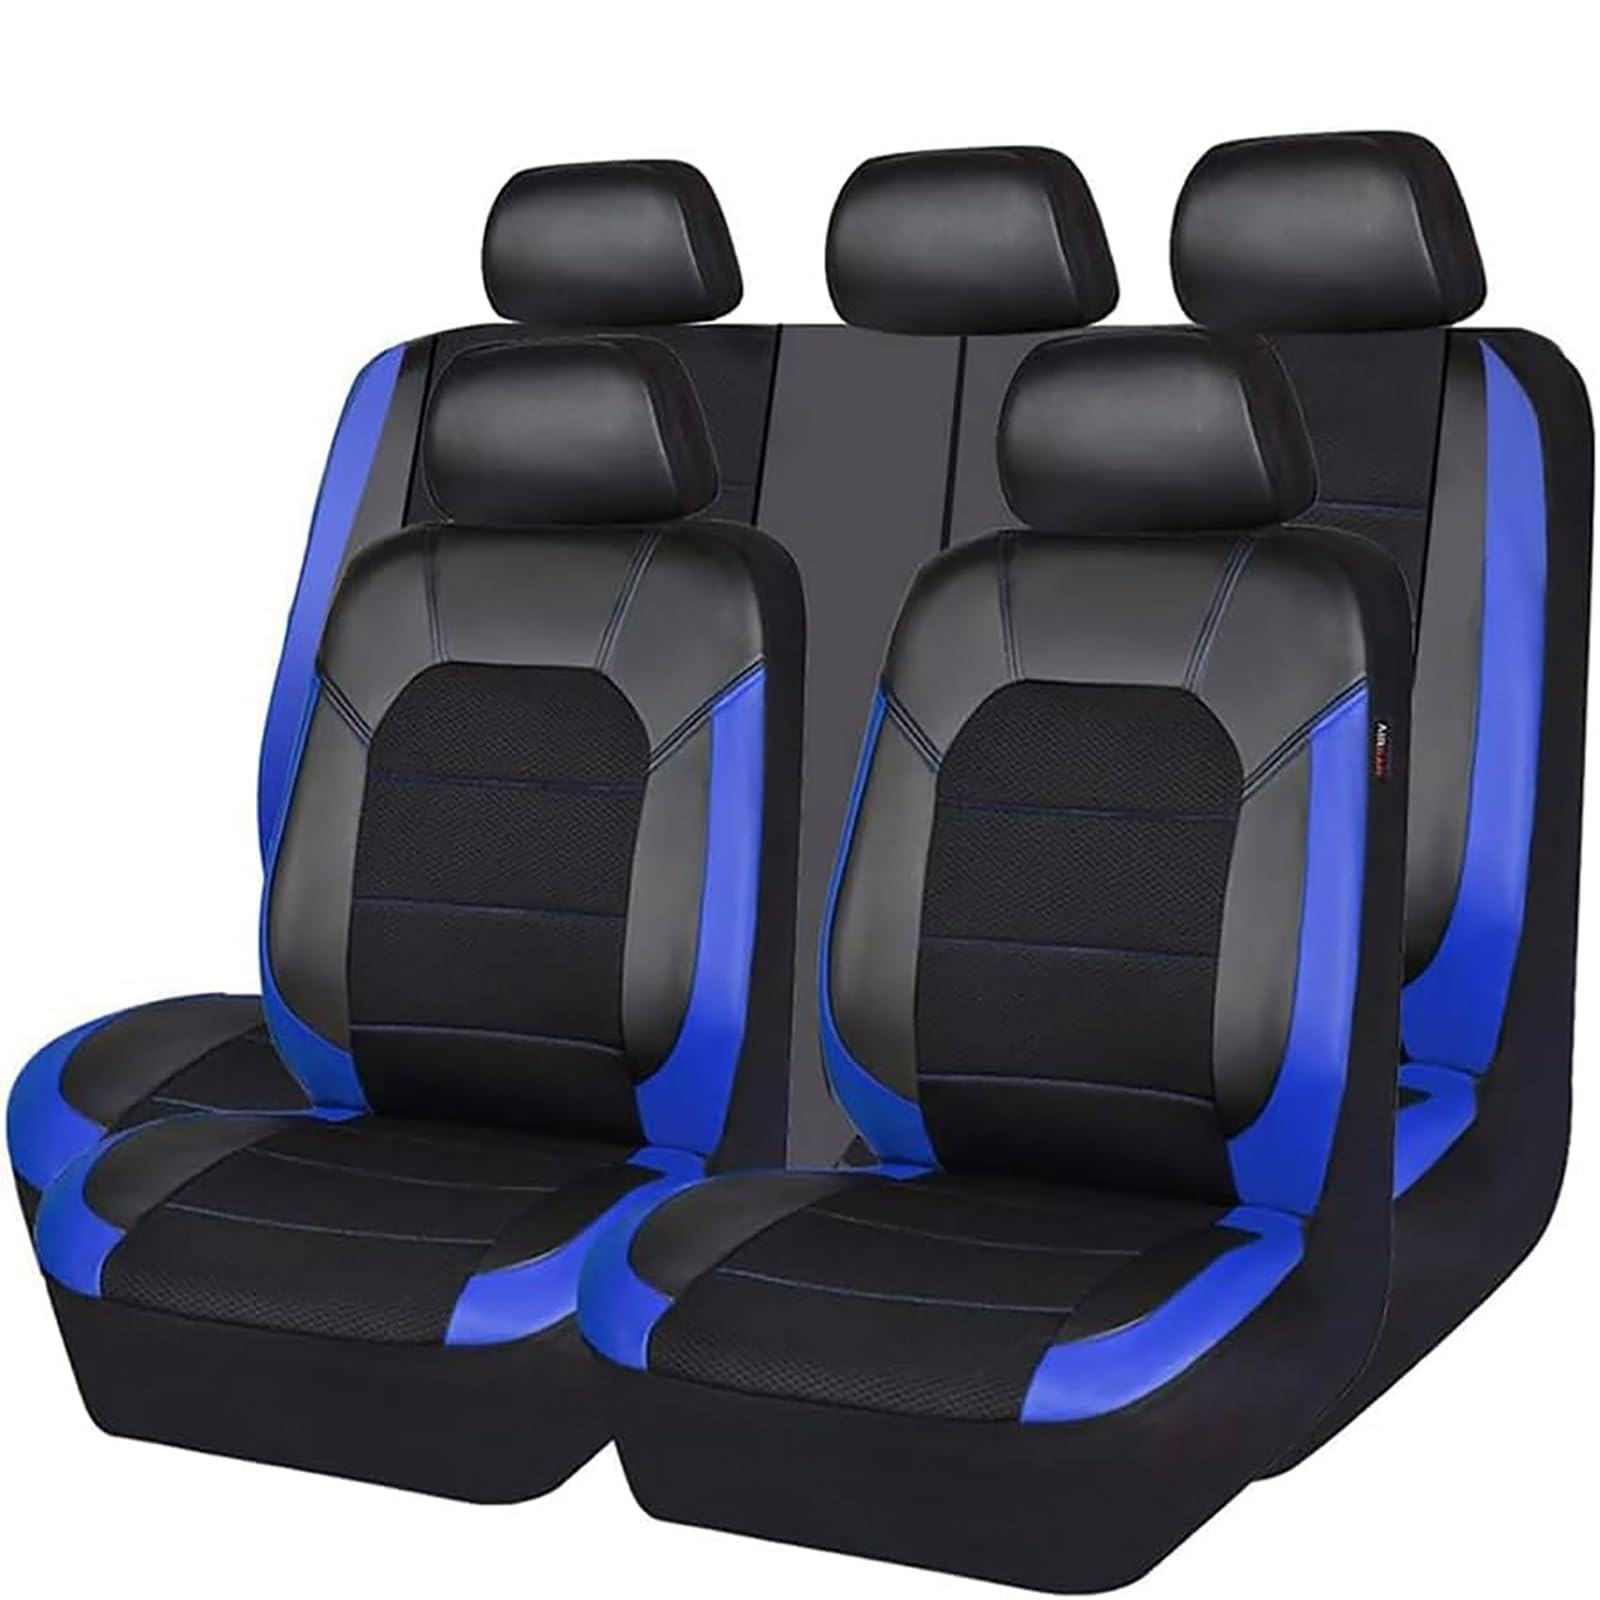 YZECEBNF Auto Sitzbezüge Set Für Ford Fiesta 09 MK7 2011-2017, Universal Autositzbezüge Vorne RüCken Sitzschutz Sitzkissen Waschbarer Anti Rutsch Innenraum Zubehör,C/Blue von YZECEBNF